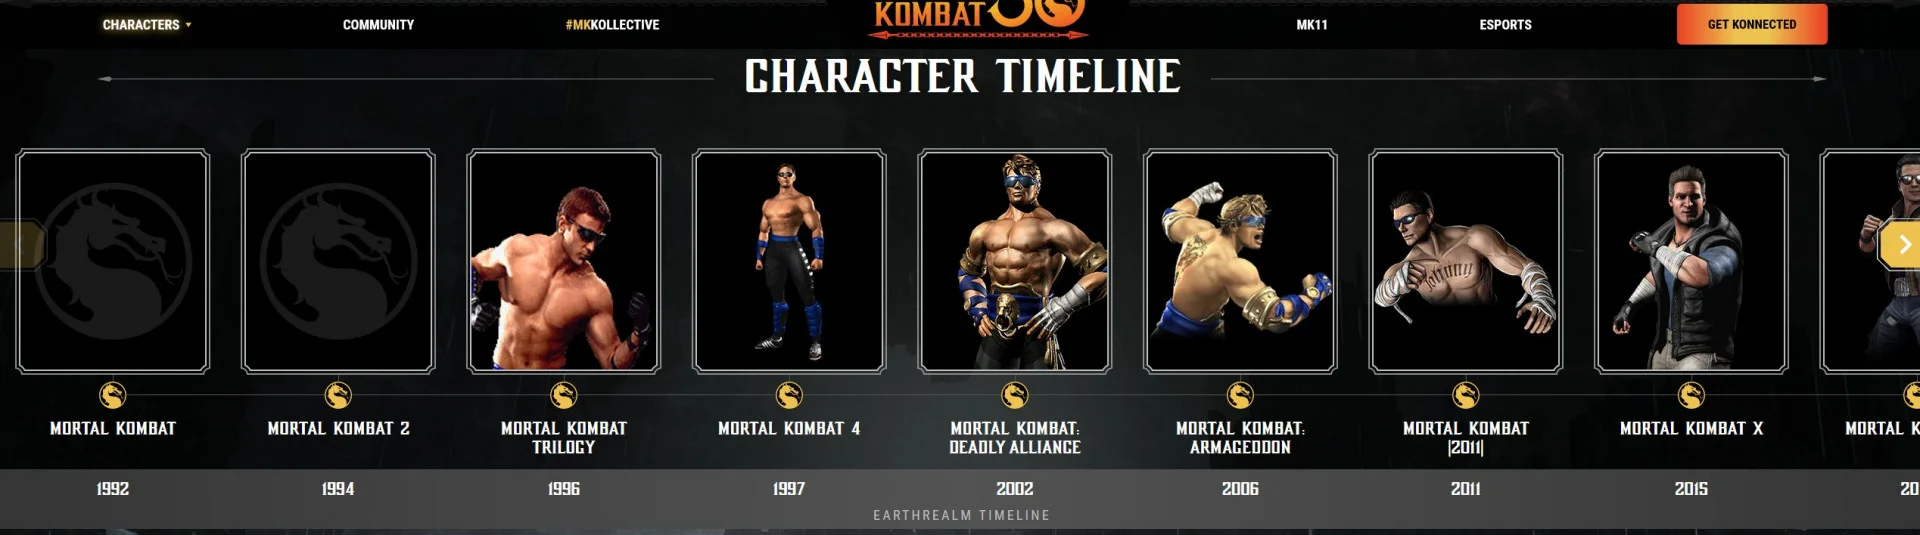 Инсайдеры намекнули на скорые новости по Mortal Kombat 12 и релиз в сентябре - фото 1